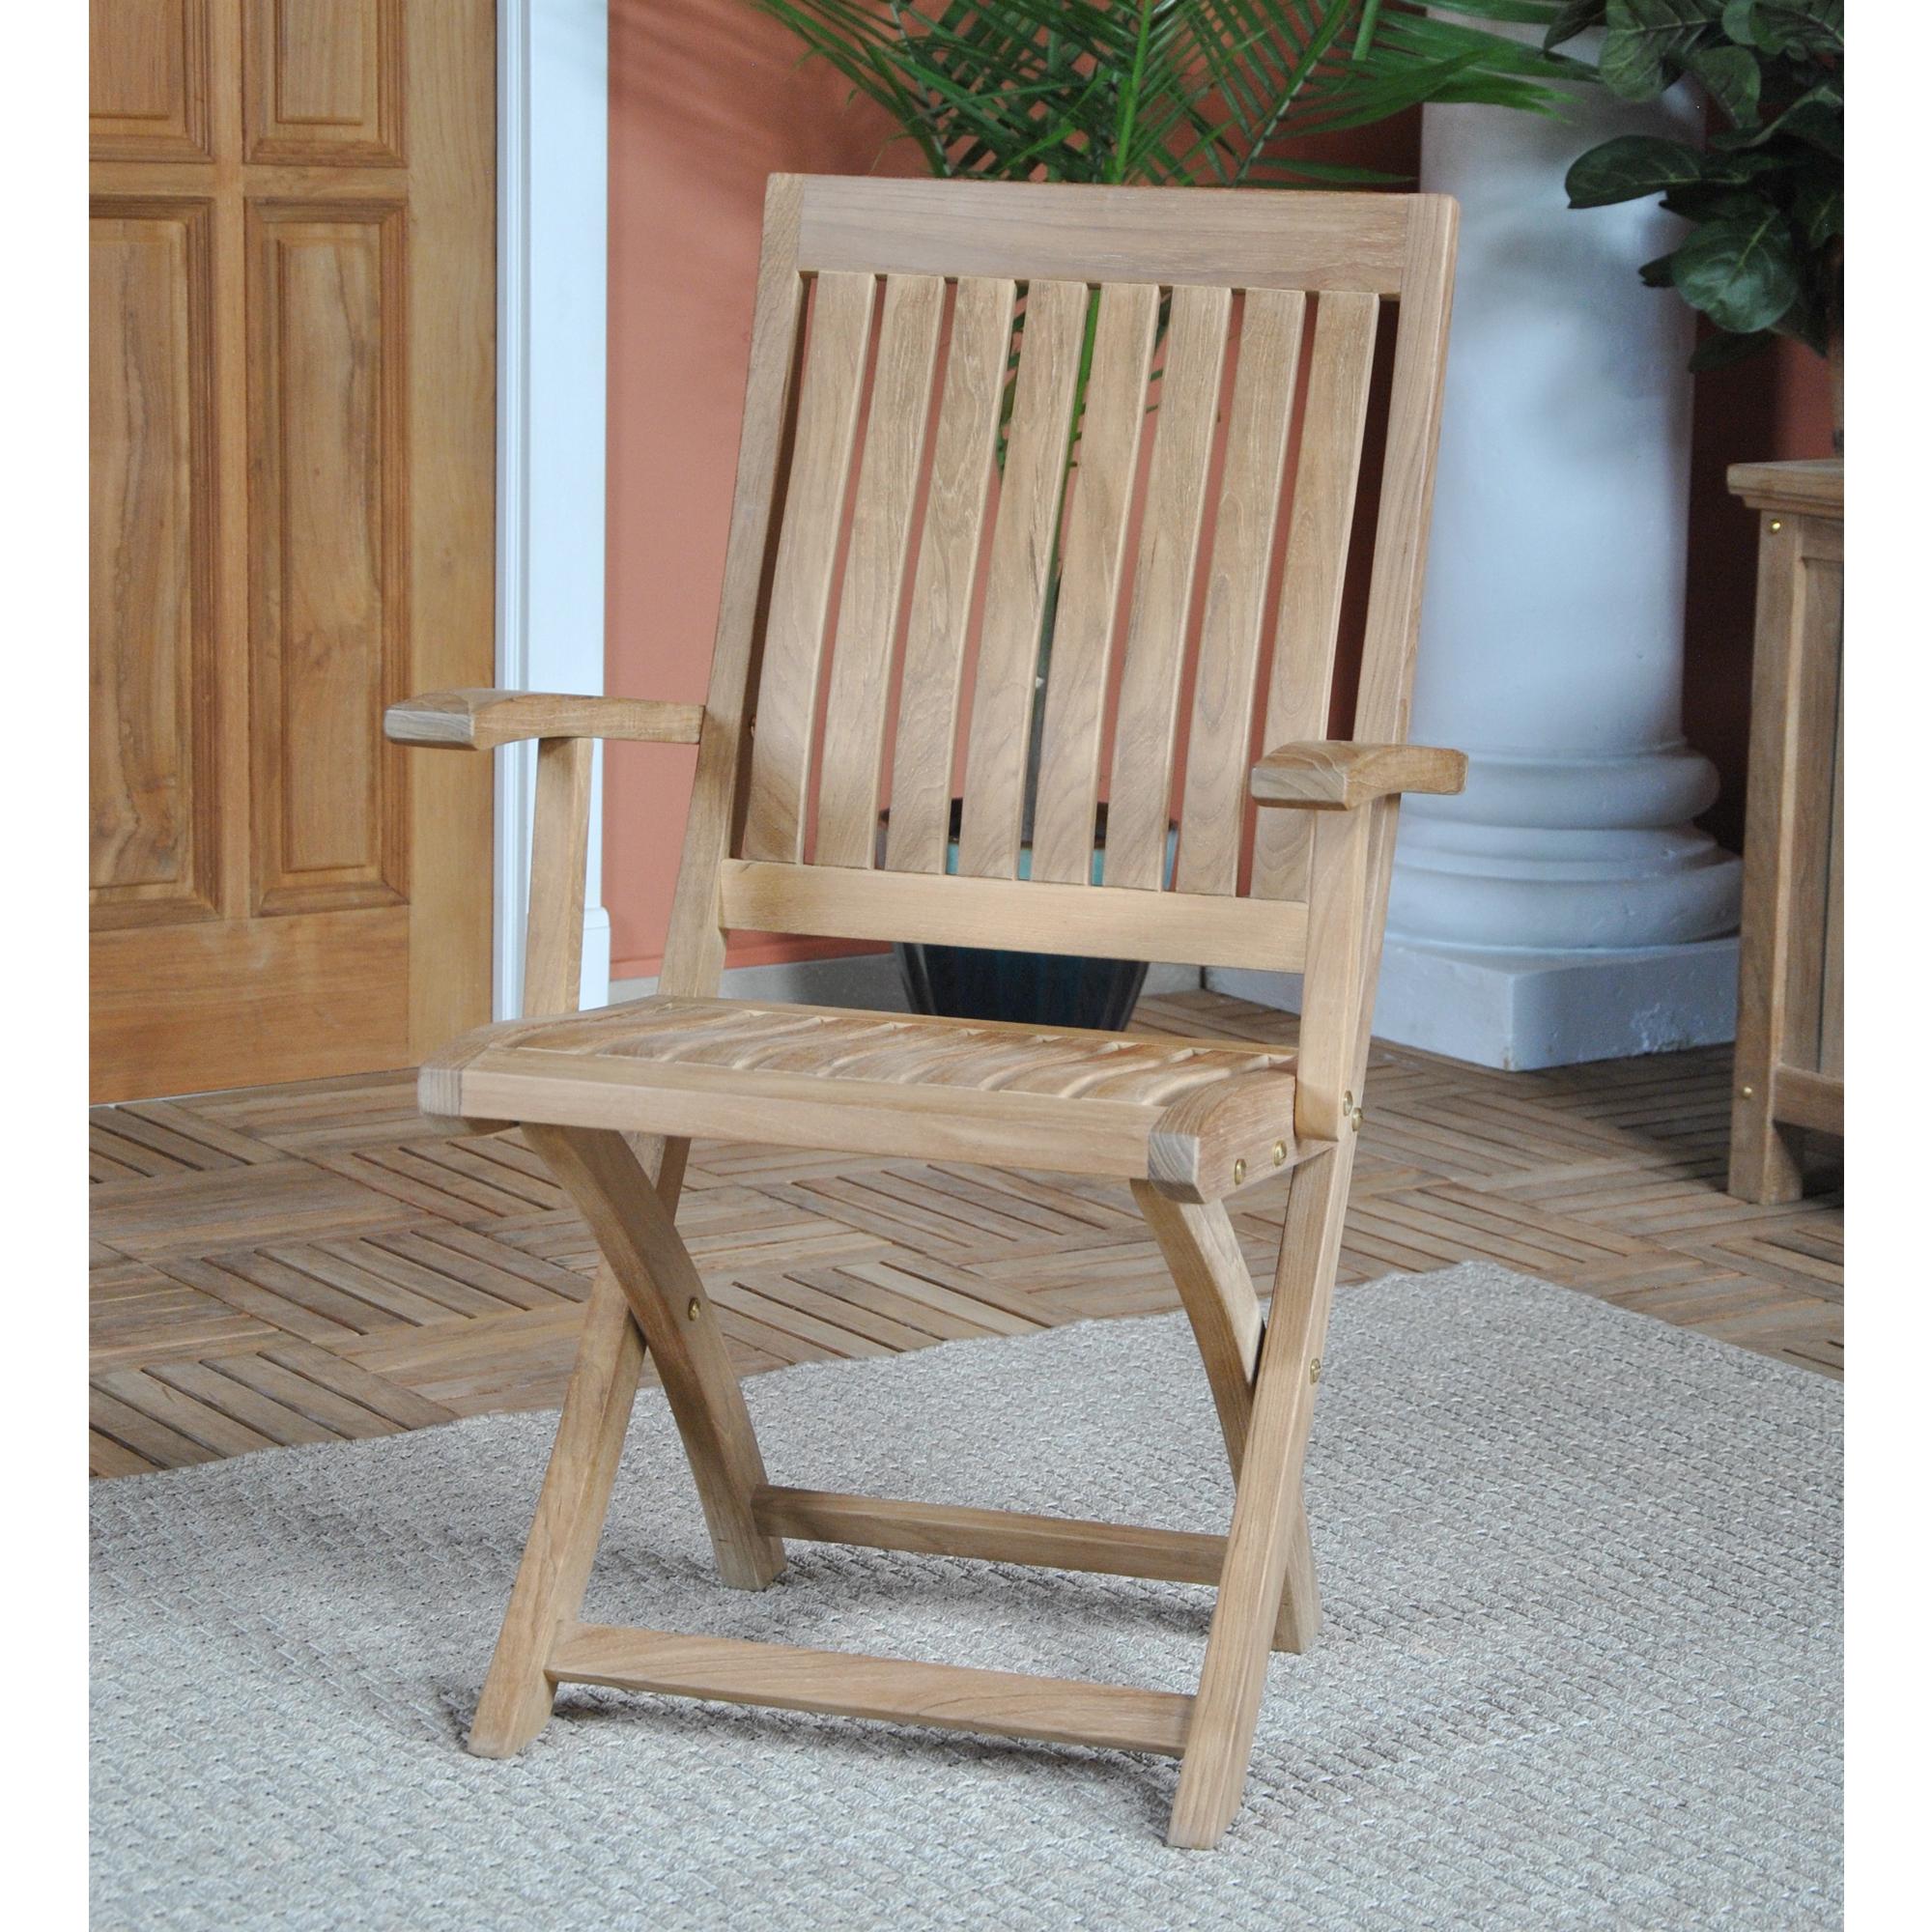 La chaise à bras pliante Niagara Teak Crown convient à une utilisation à l'intérieur ou à l'extérieur. Magnifiquement fabriquée en teck massif et très solidement construite, la chaise à bras pliante en teck offre une assise confortable tout en